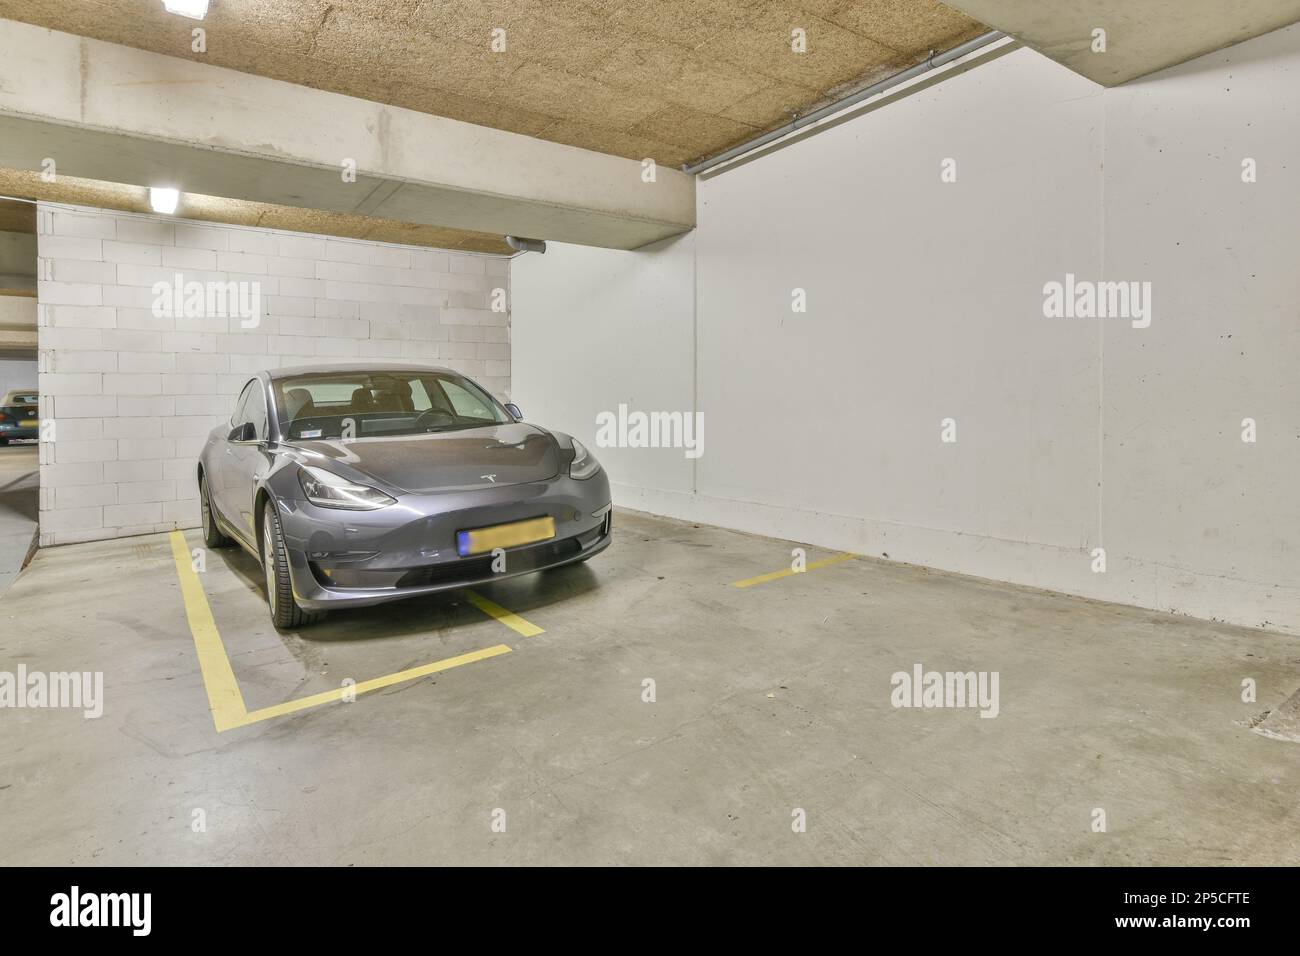 Amsterdam, Paesi Bassi - 10 aprile 2021: Un'auto parcheggiata in un parcheggio con pareti bianche e linee gialle sul pavimento per indicare che non c'è parcheggio Foto Stock